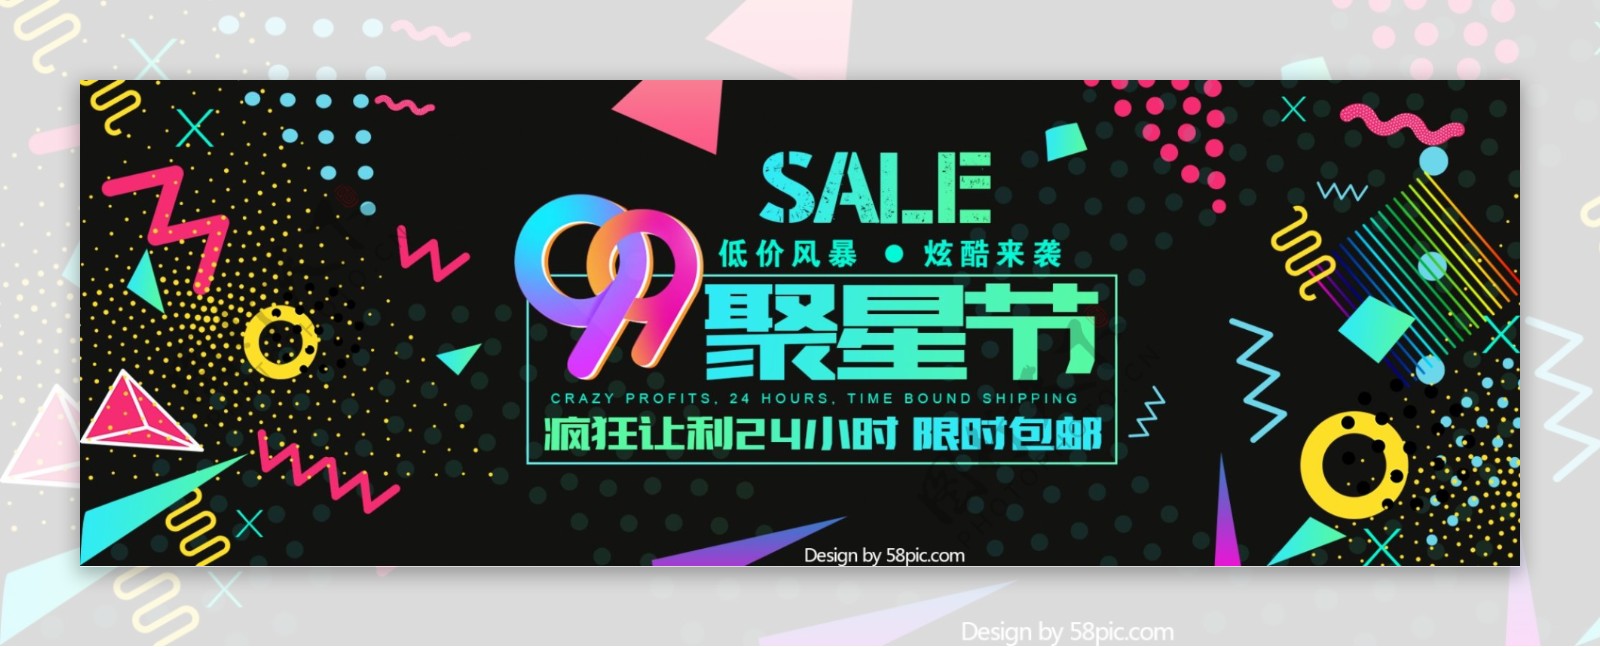 淘宝天猫电商99聚星节科技数码电器促销海报banner模板设计